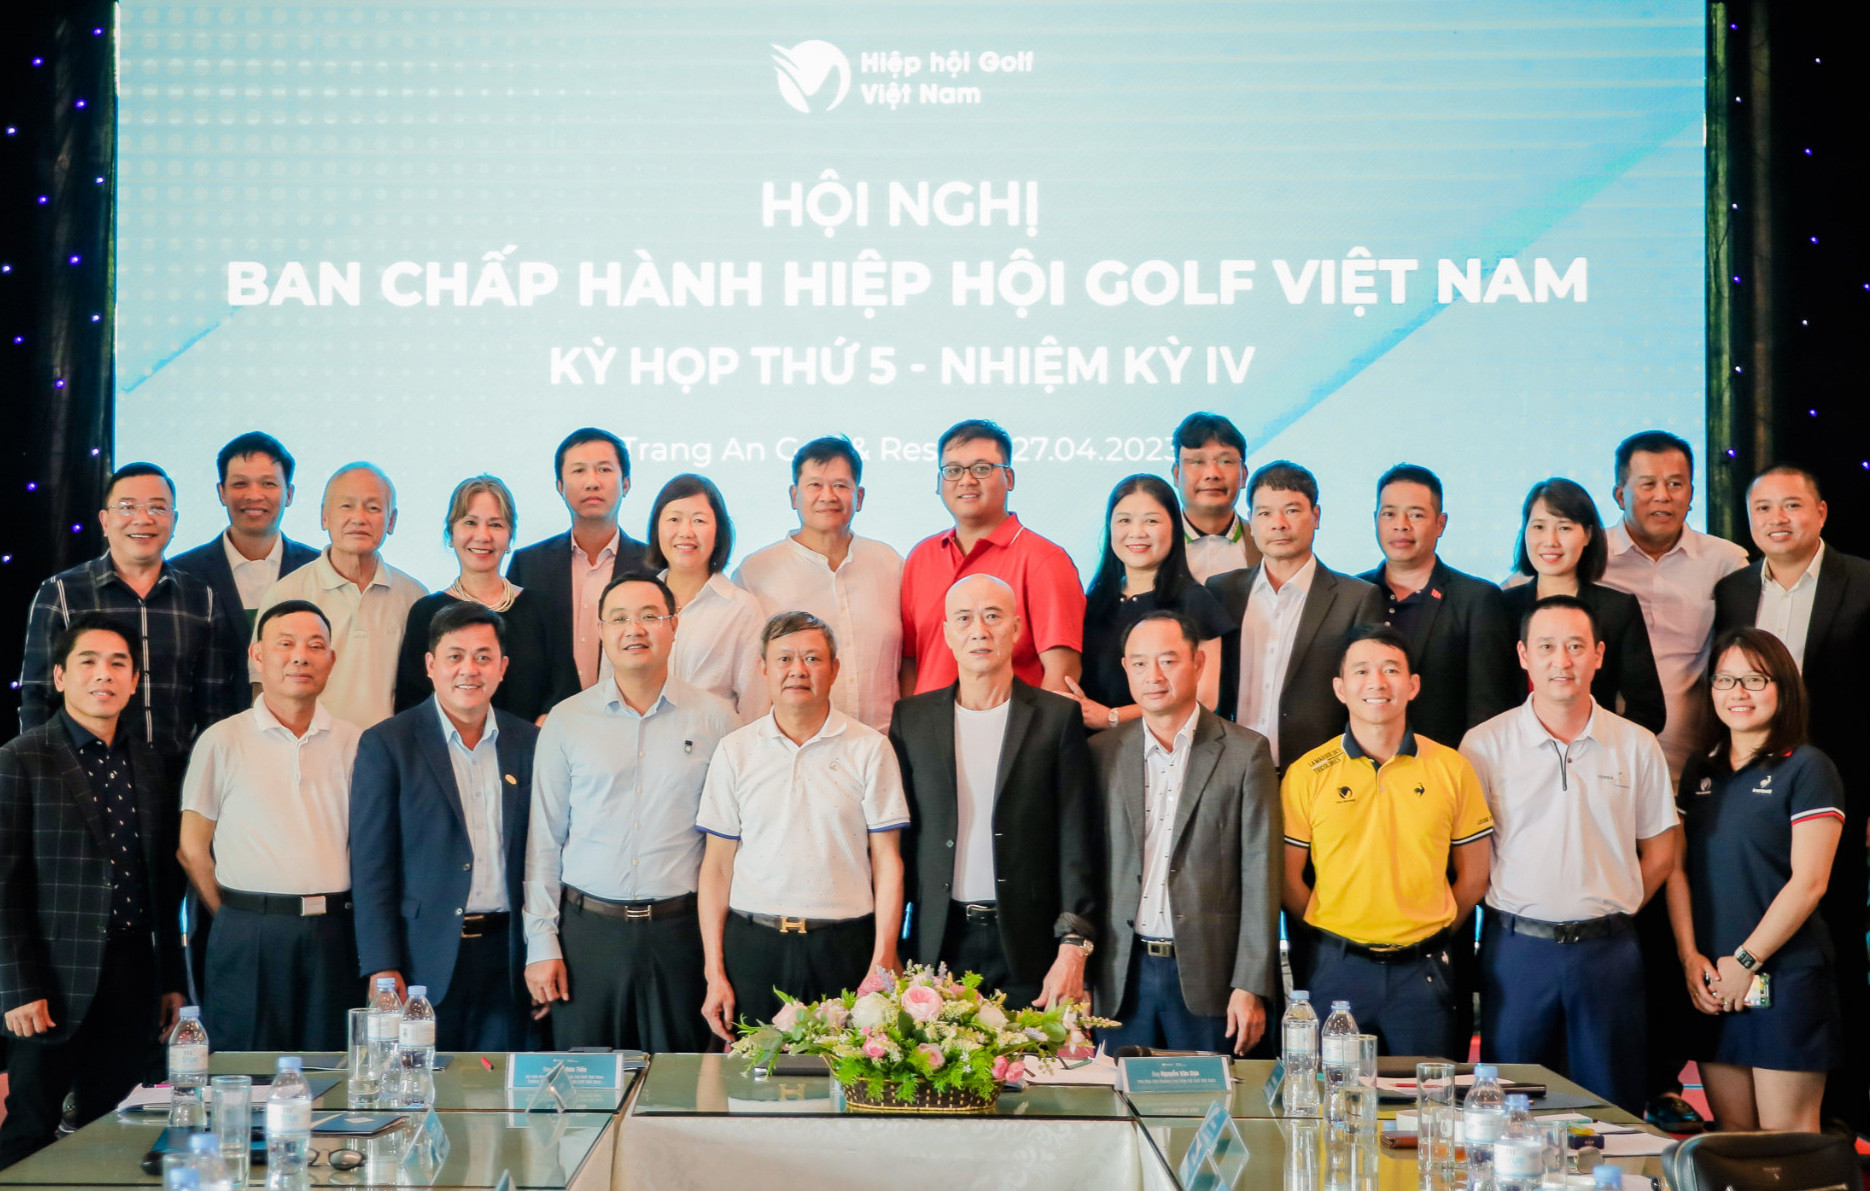 Hiệp hội golf Việt Nam có tân Phó Chủ tịch